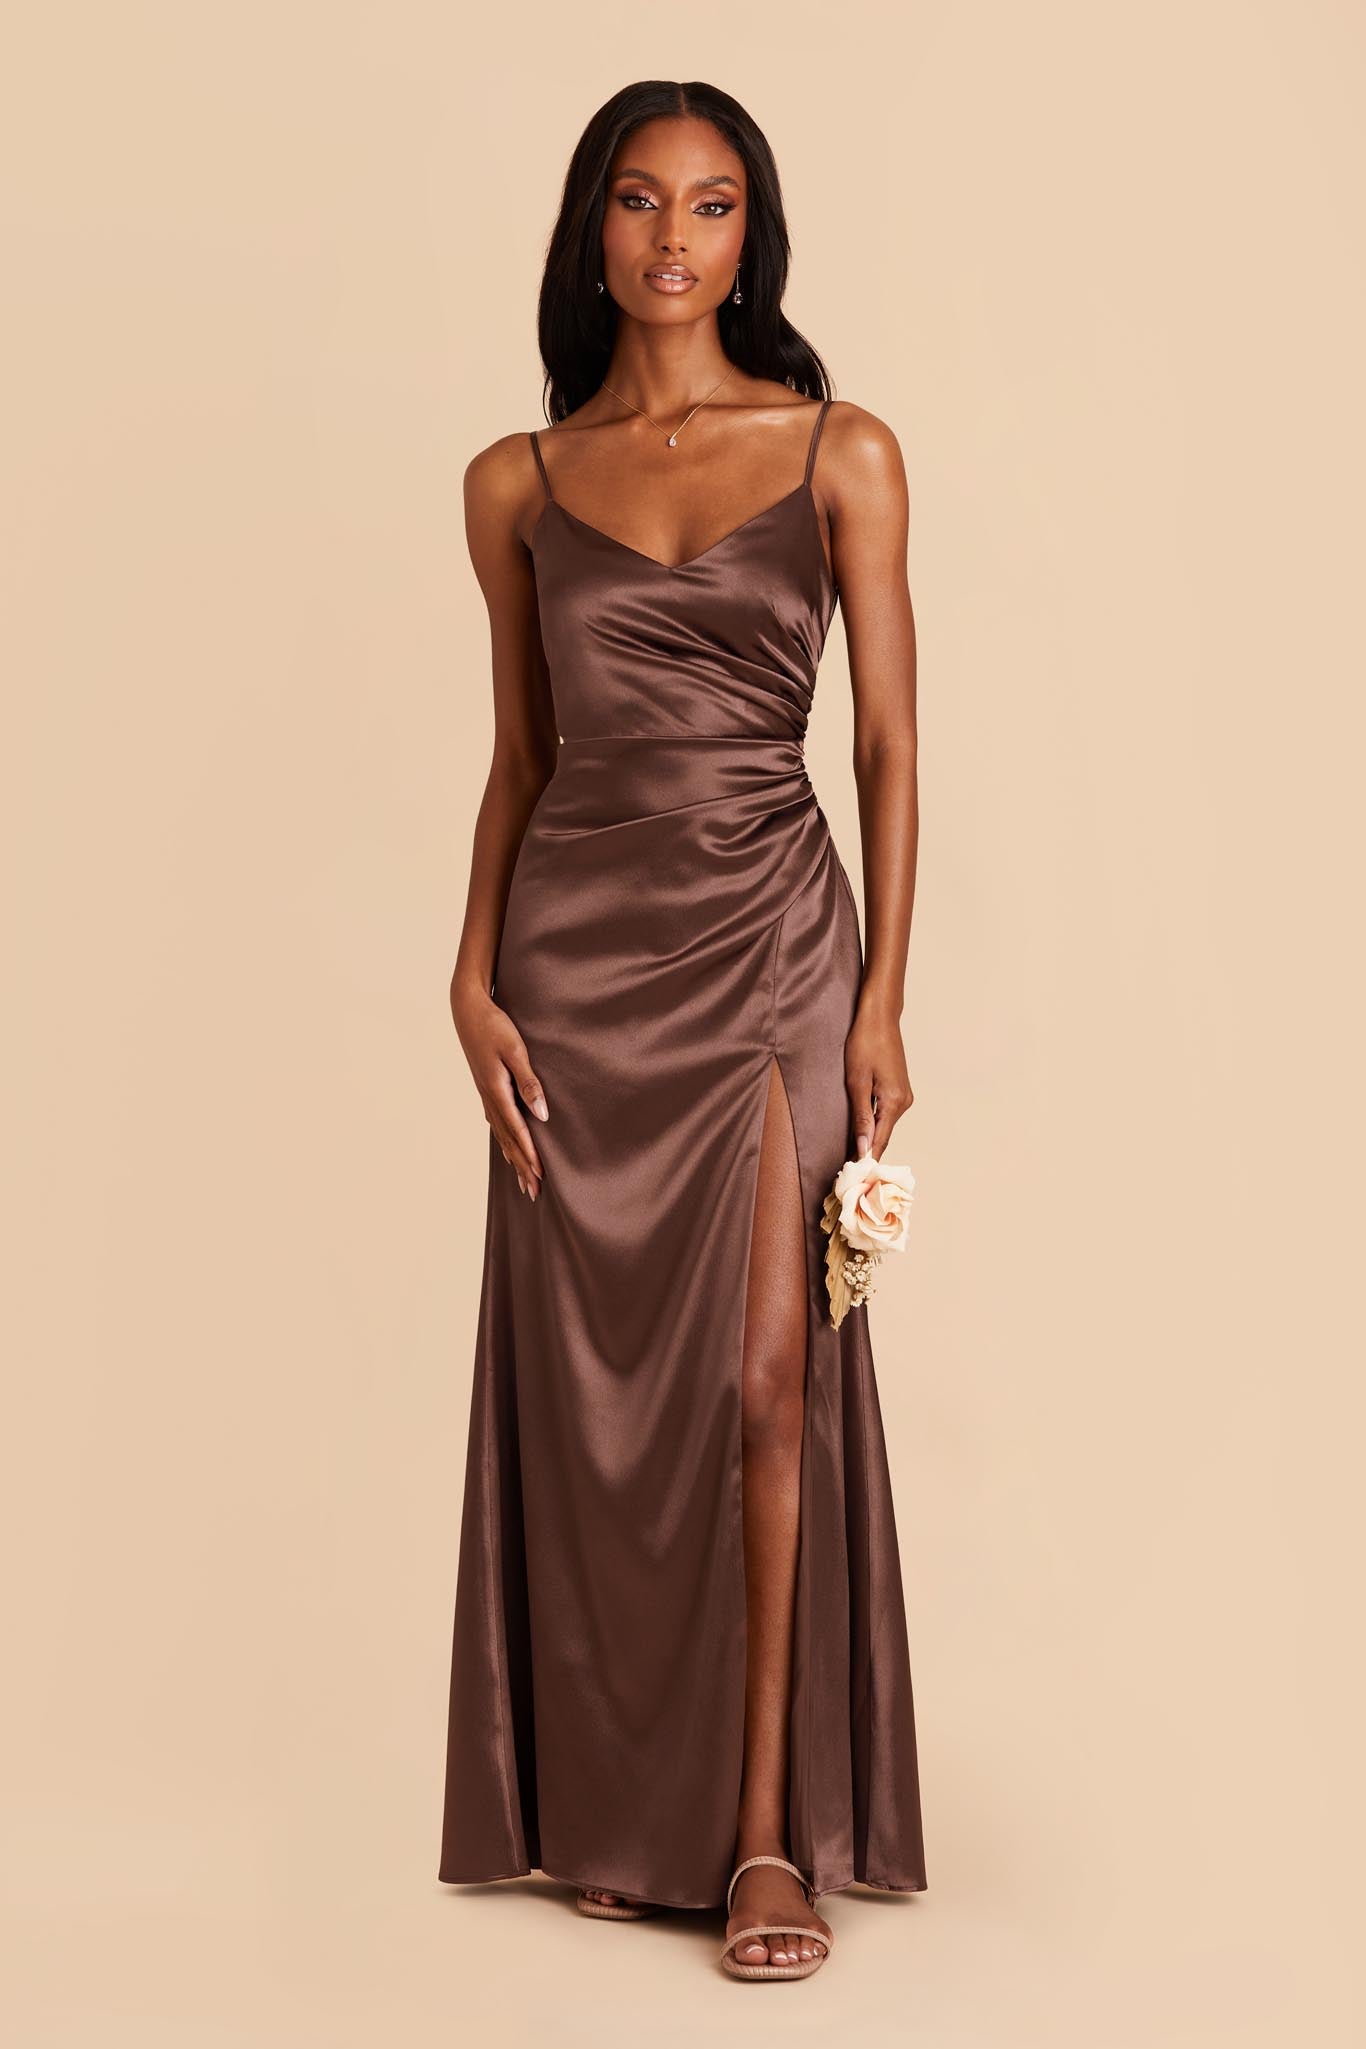 Chocolate Brown Catherine Satin Dress by Birdy Grey